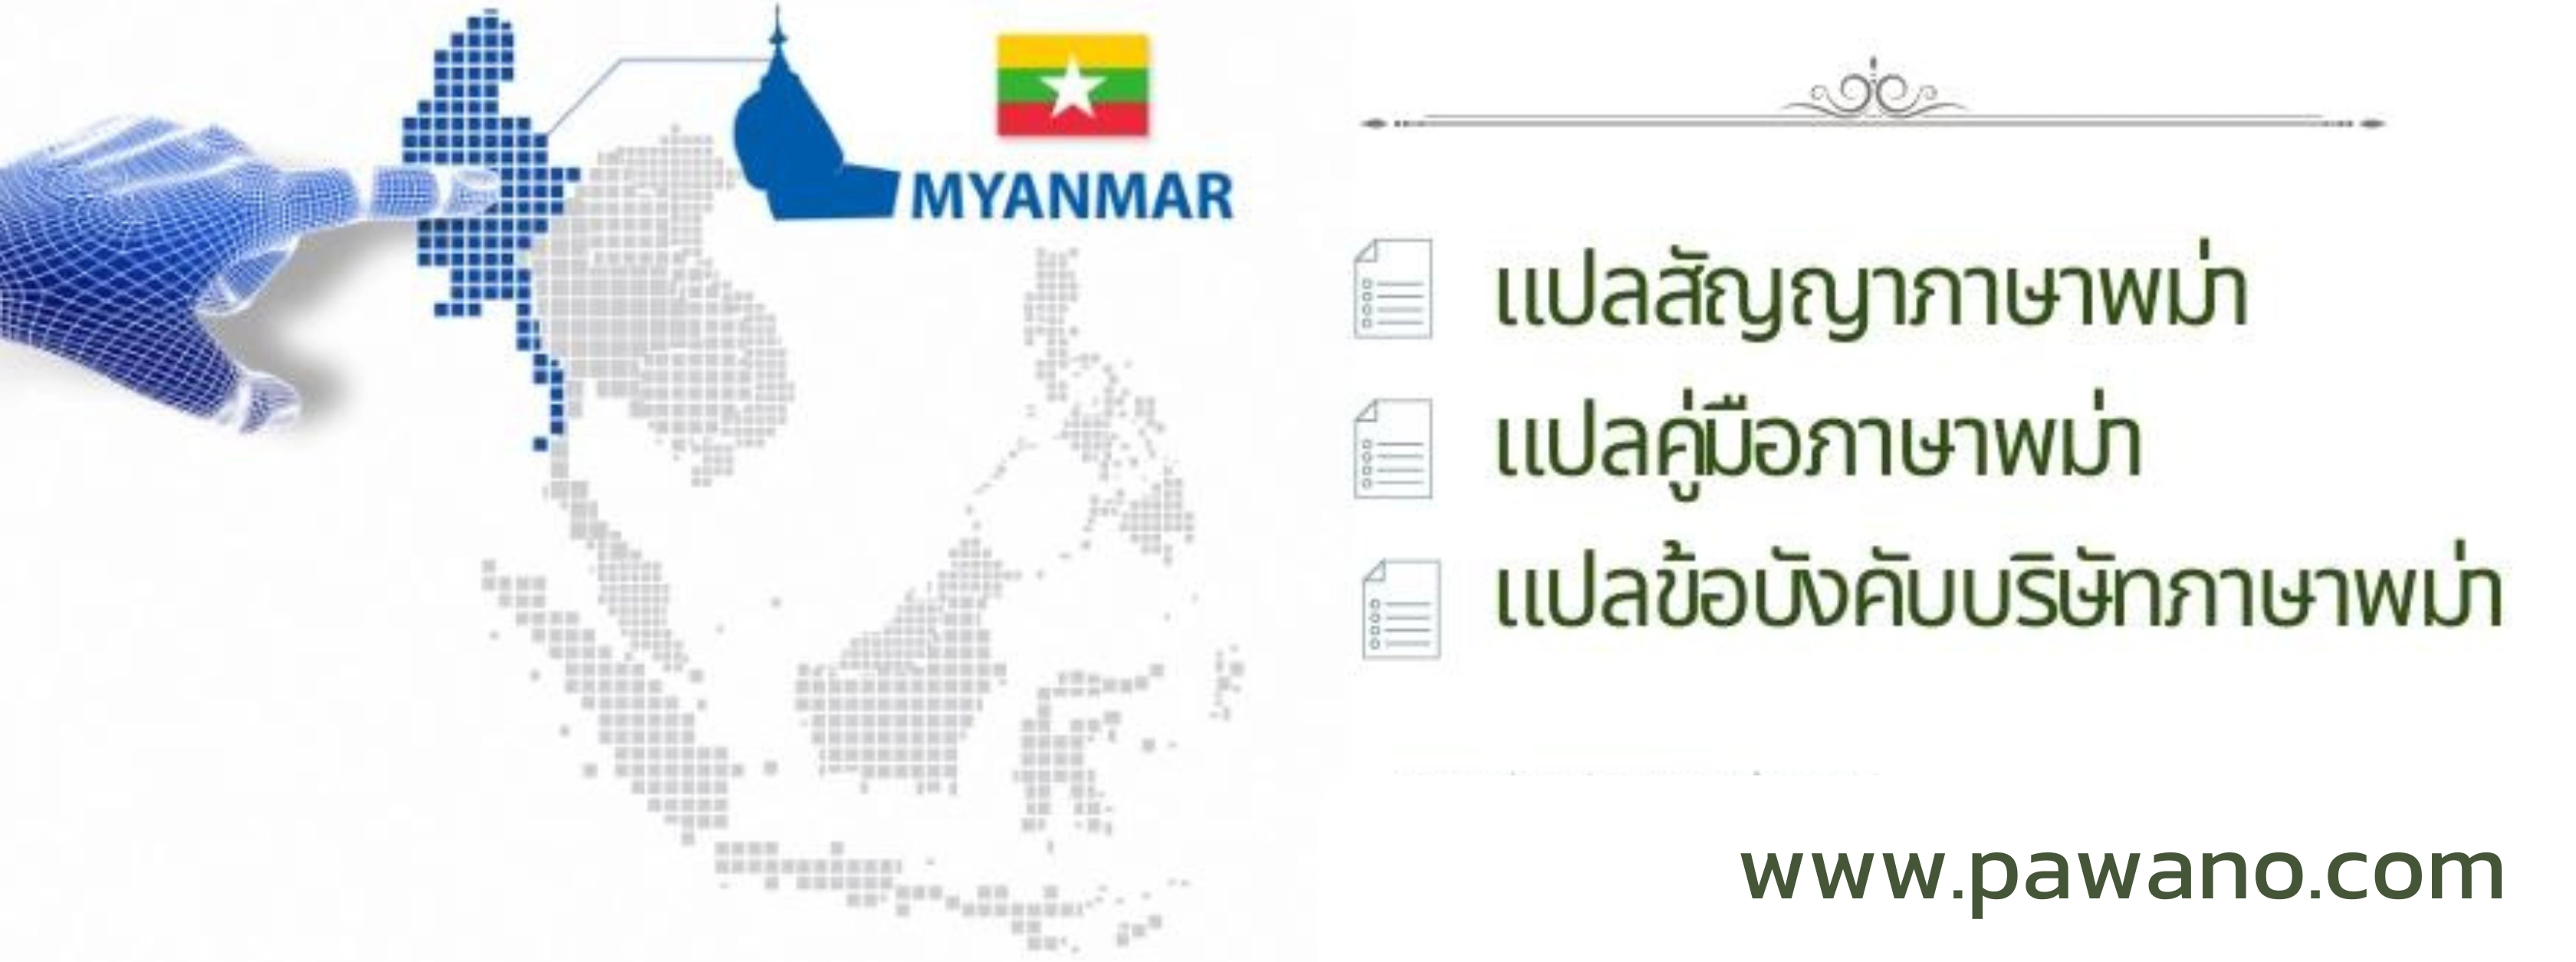 แปลภาษาไทยเป็นพม่า